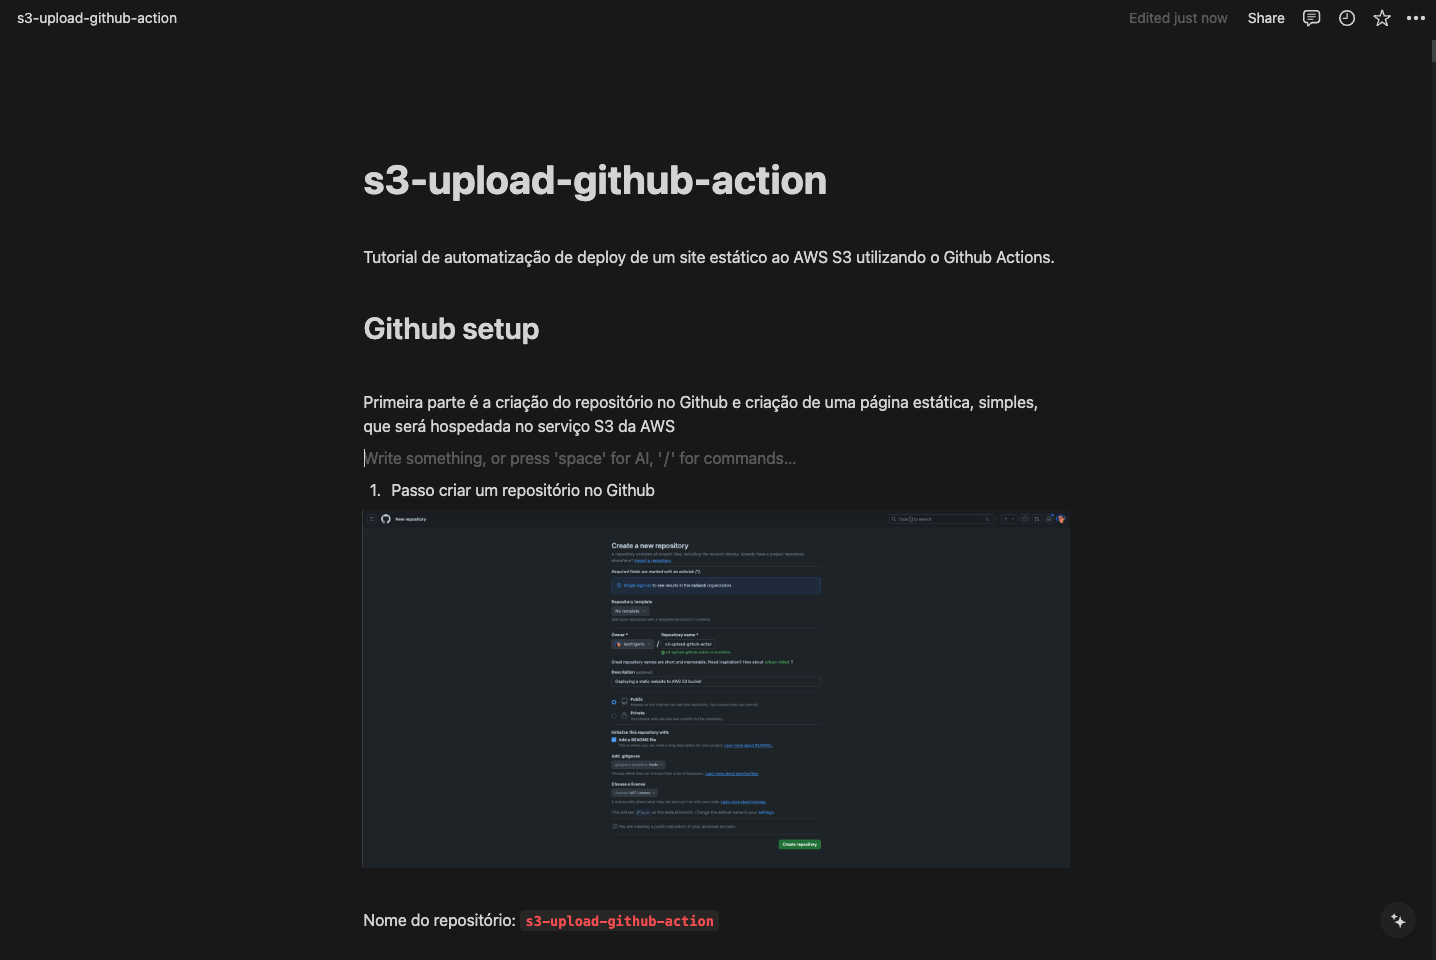 Página do notion que contém o tutorial de como automatizar processos usando Github Actions